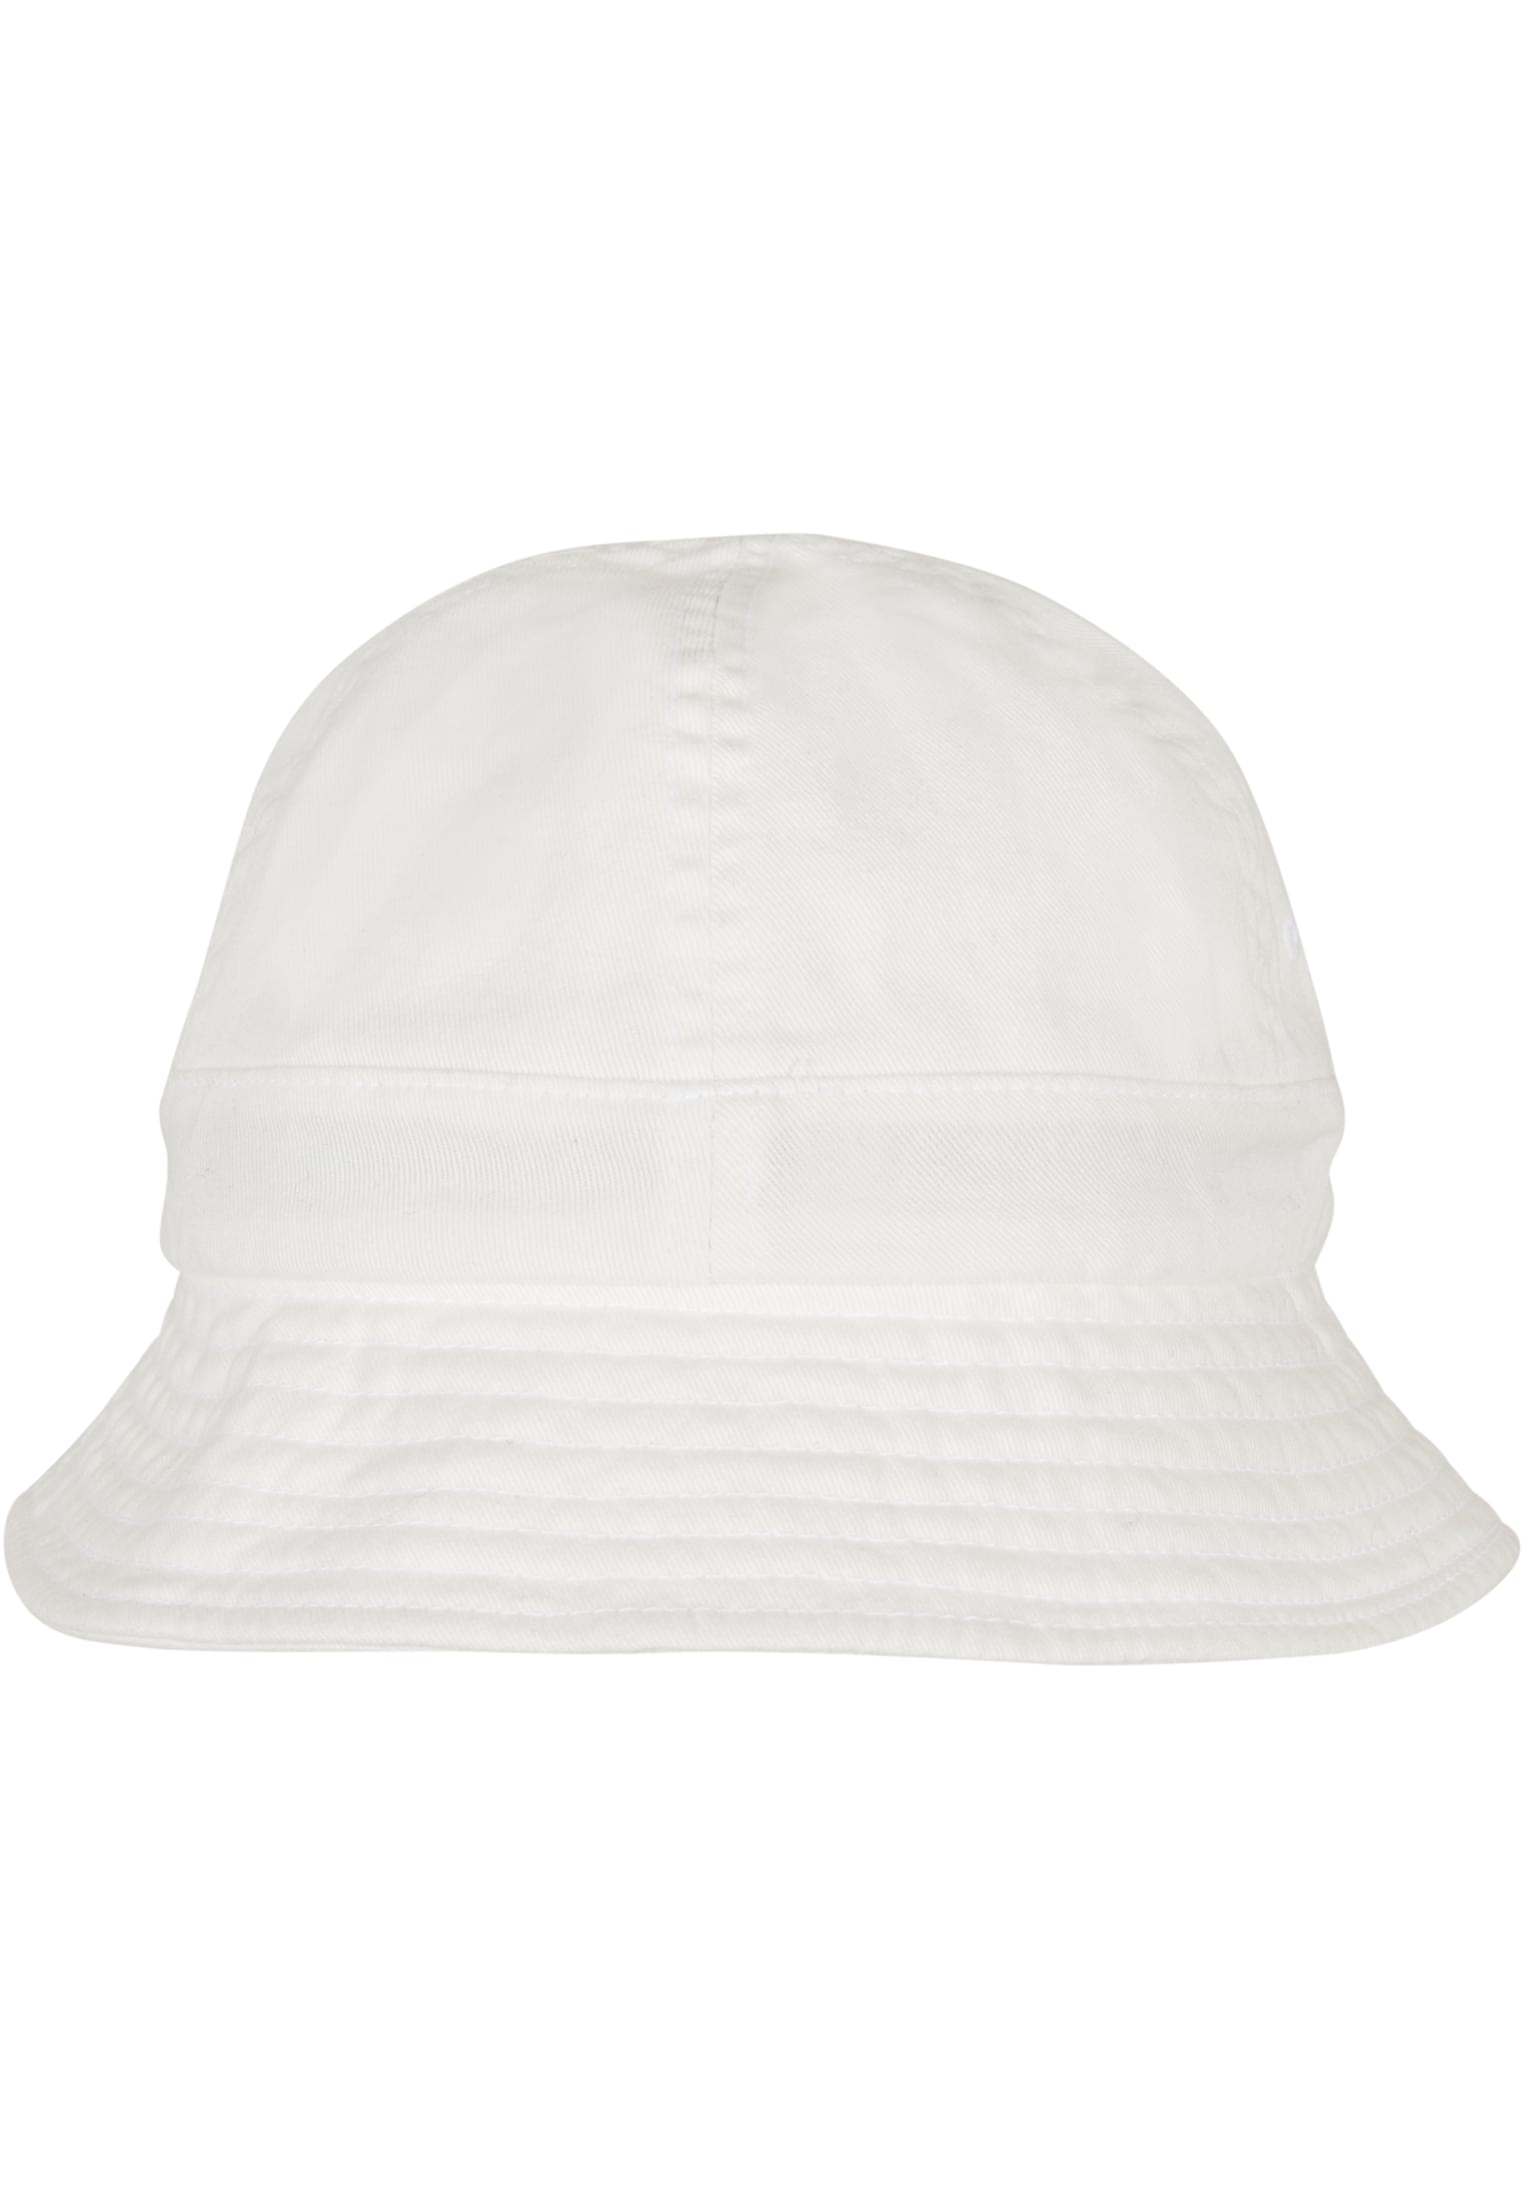 Flexfit Eco Washing Flexfit Notop Tennis Hat in Farbe white